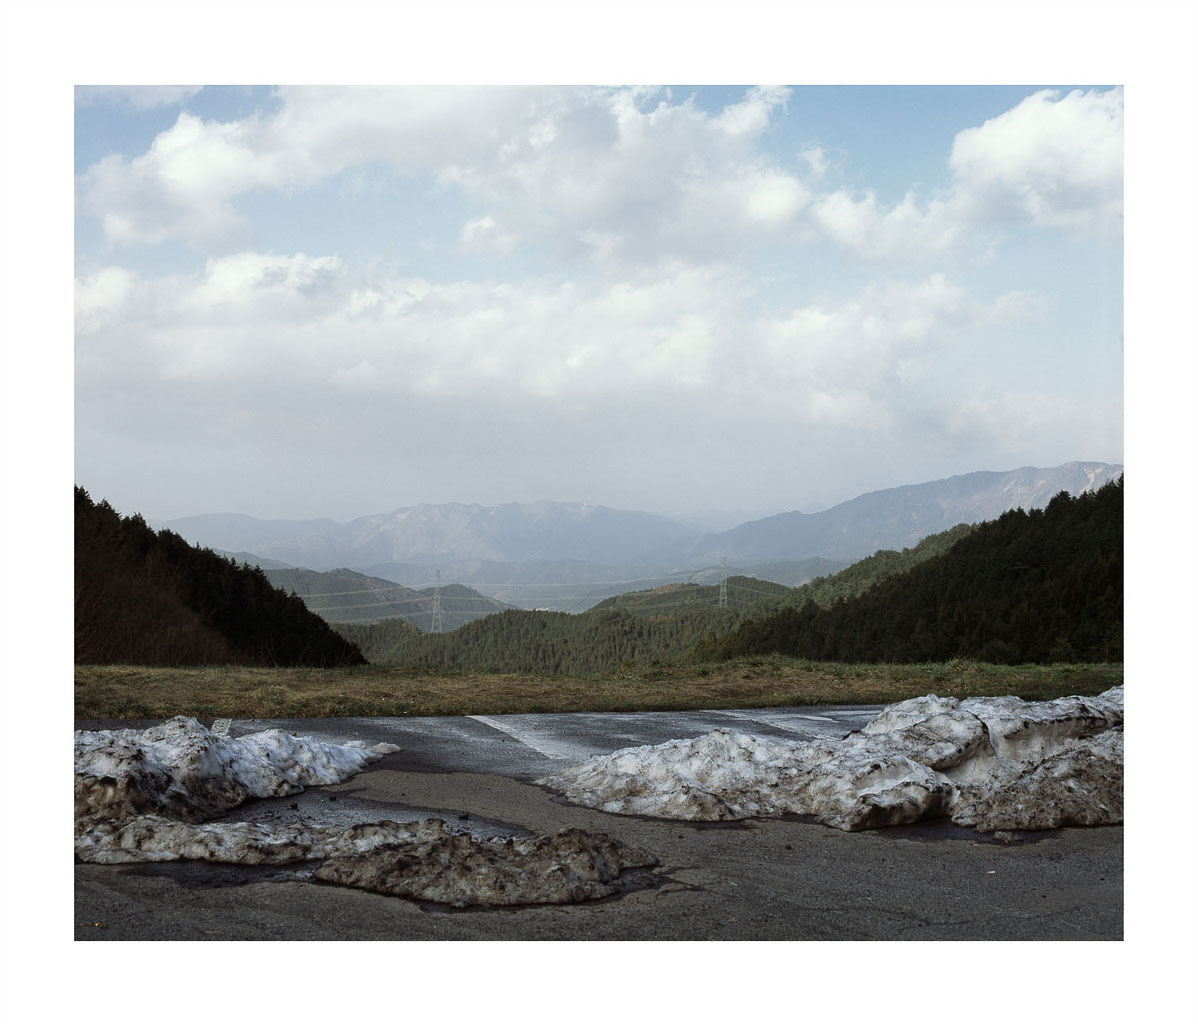 japan tottori sendai kudász arion Gabor river Landscape portrait road dead-end mountain bridge staged countryside car funny